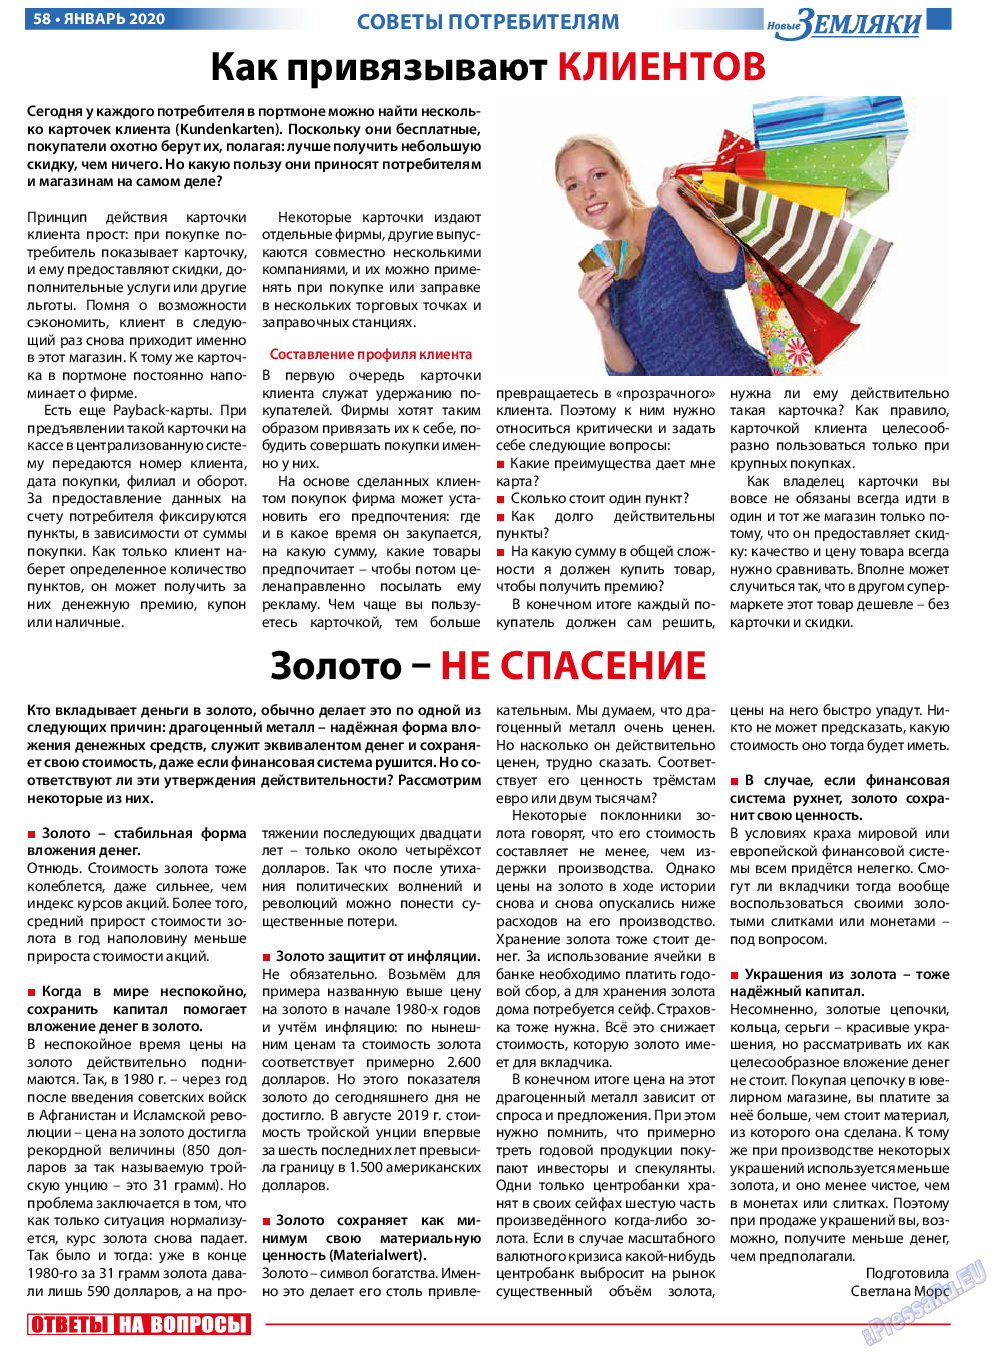 Новые Земляки (газета). 2020 год, номер 1, стр. 58